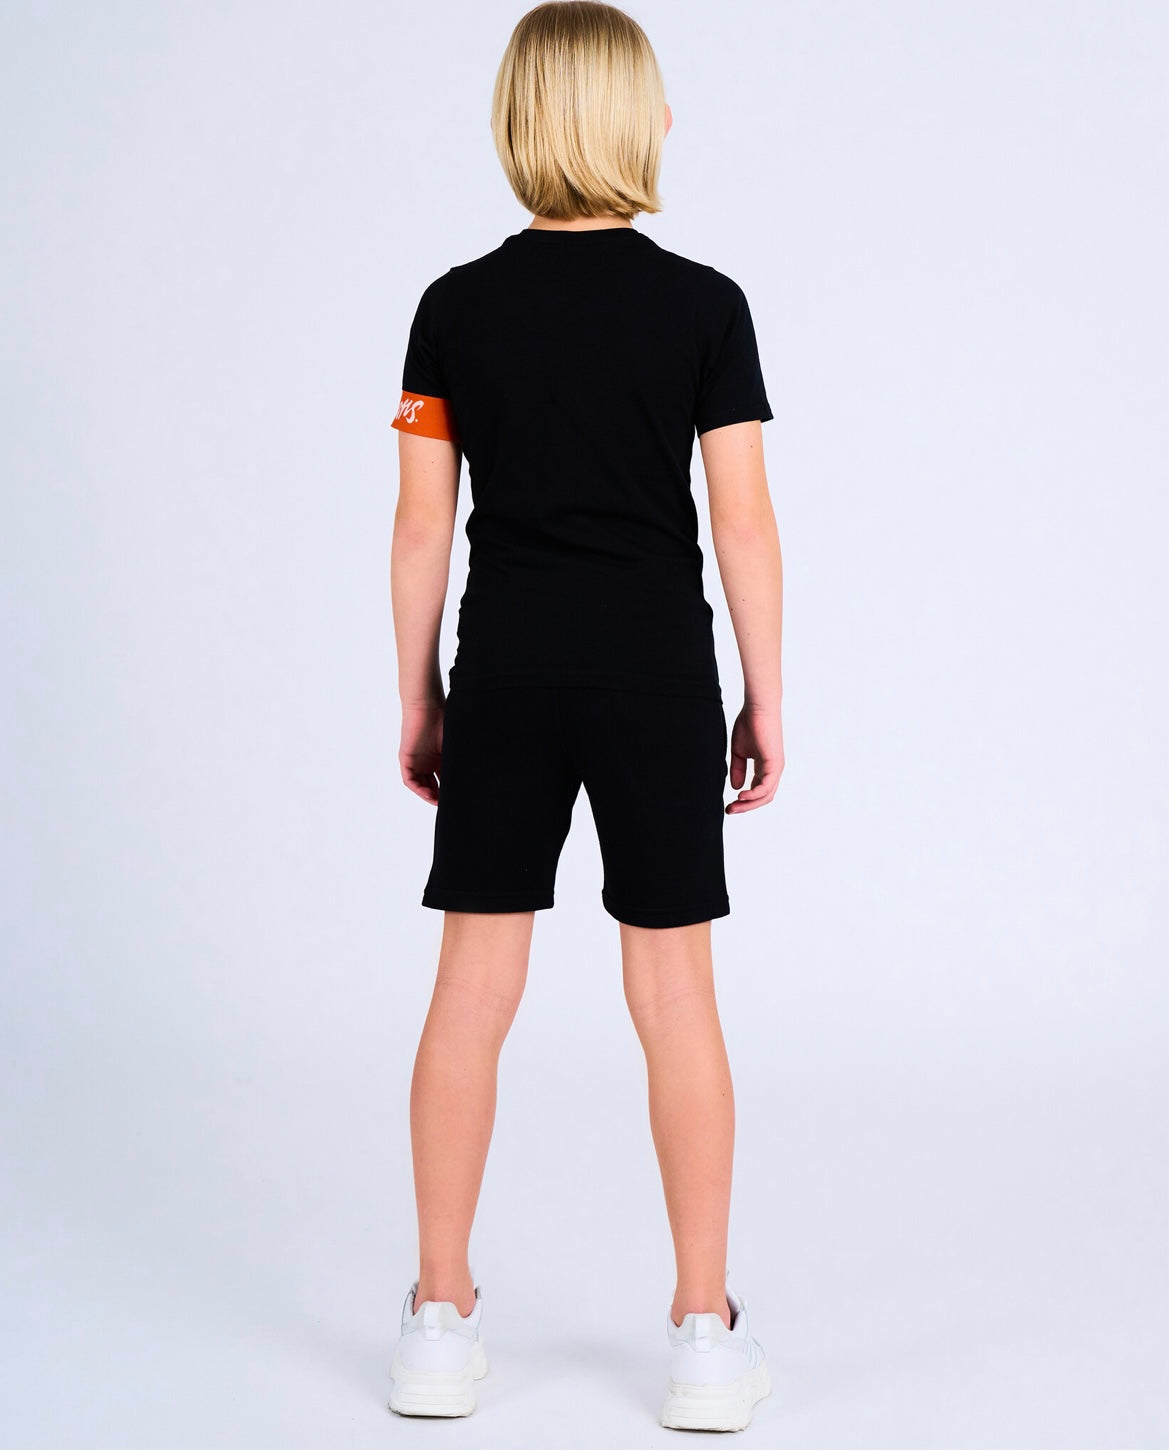 Malelions junior captain shorts 2.0 - black/orange